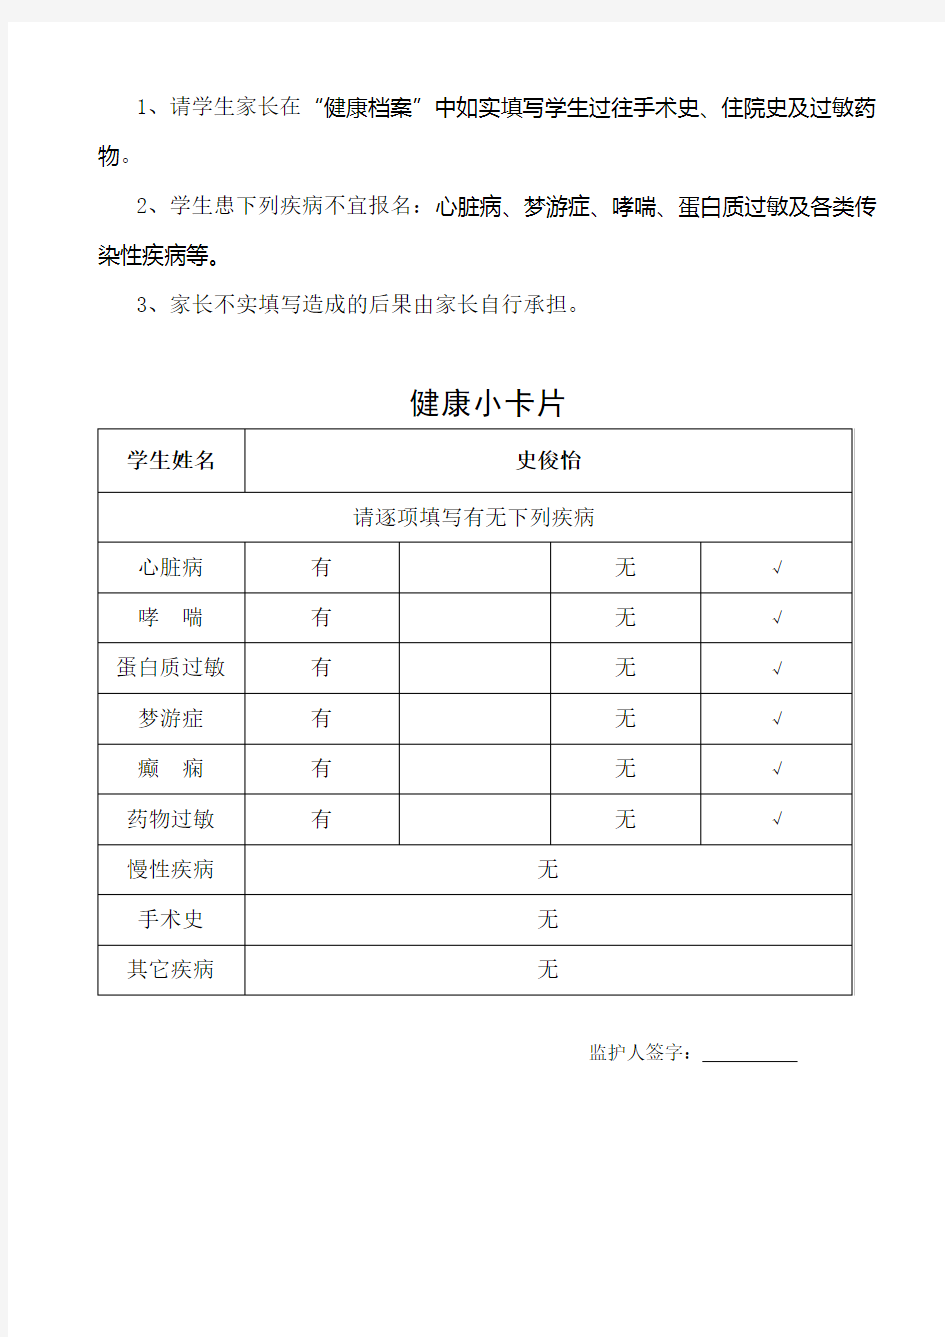 武汉实验外国语学校小学部一年级新生入学报名表